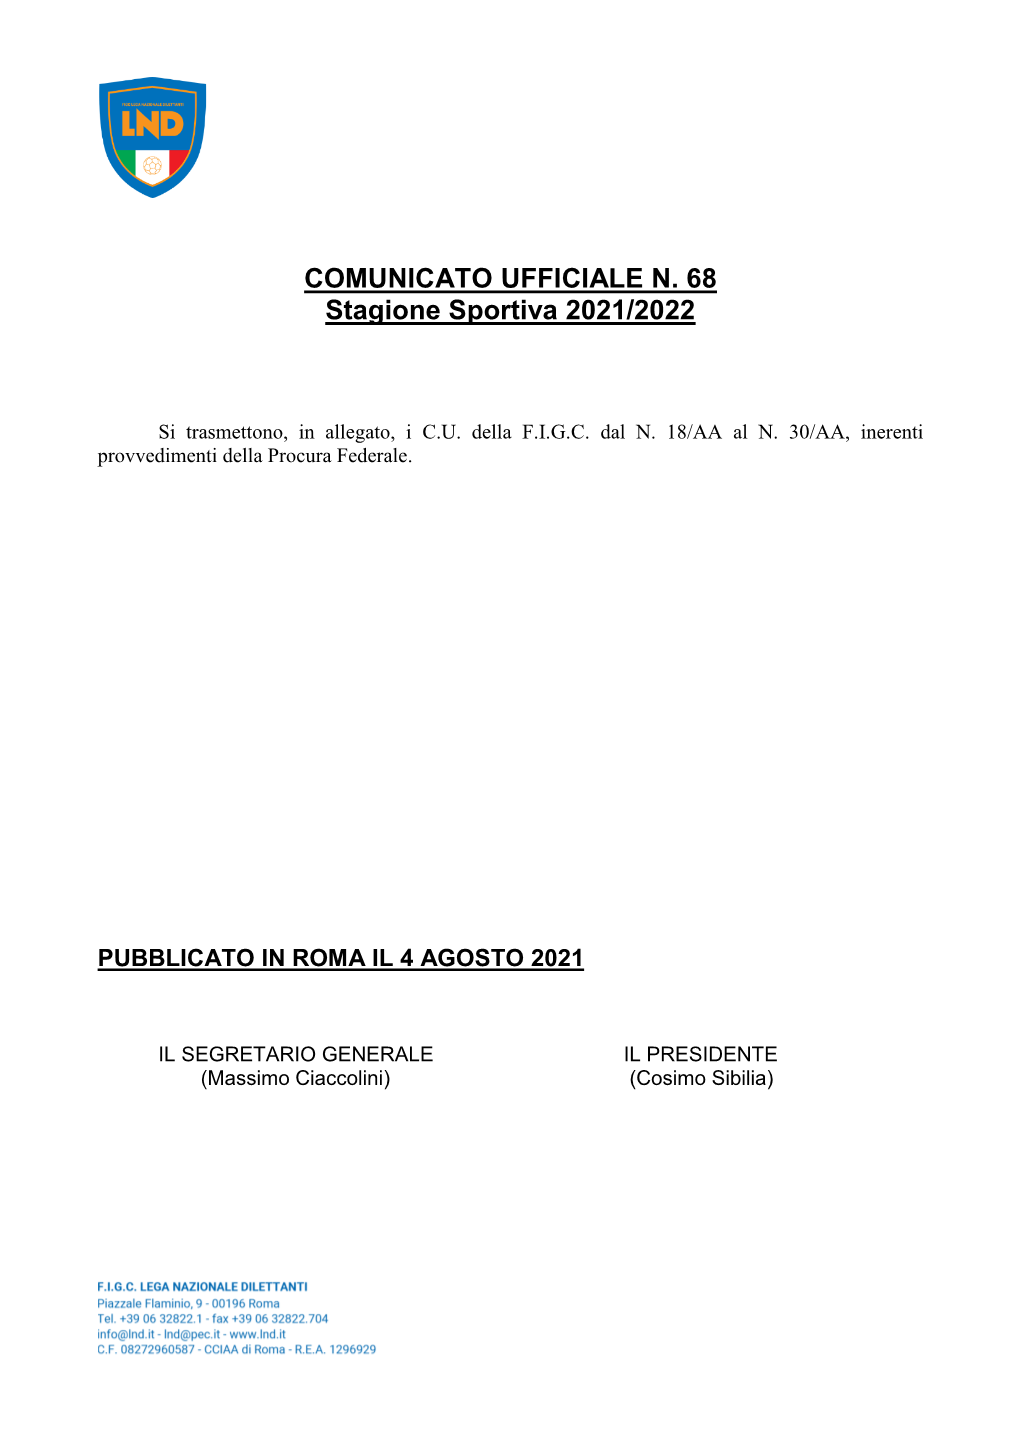 COMUNICATO UFFICIALE N. 68 Stagione Sportiva 2021/2022